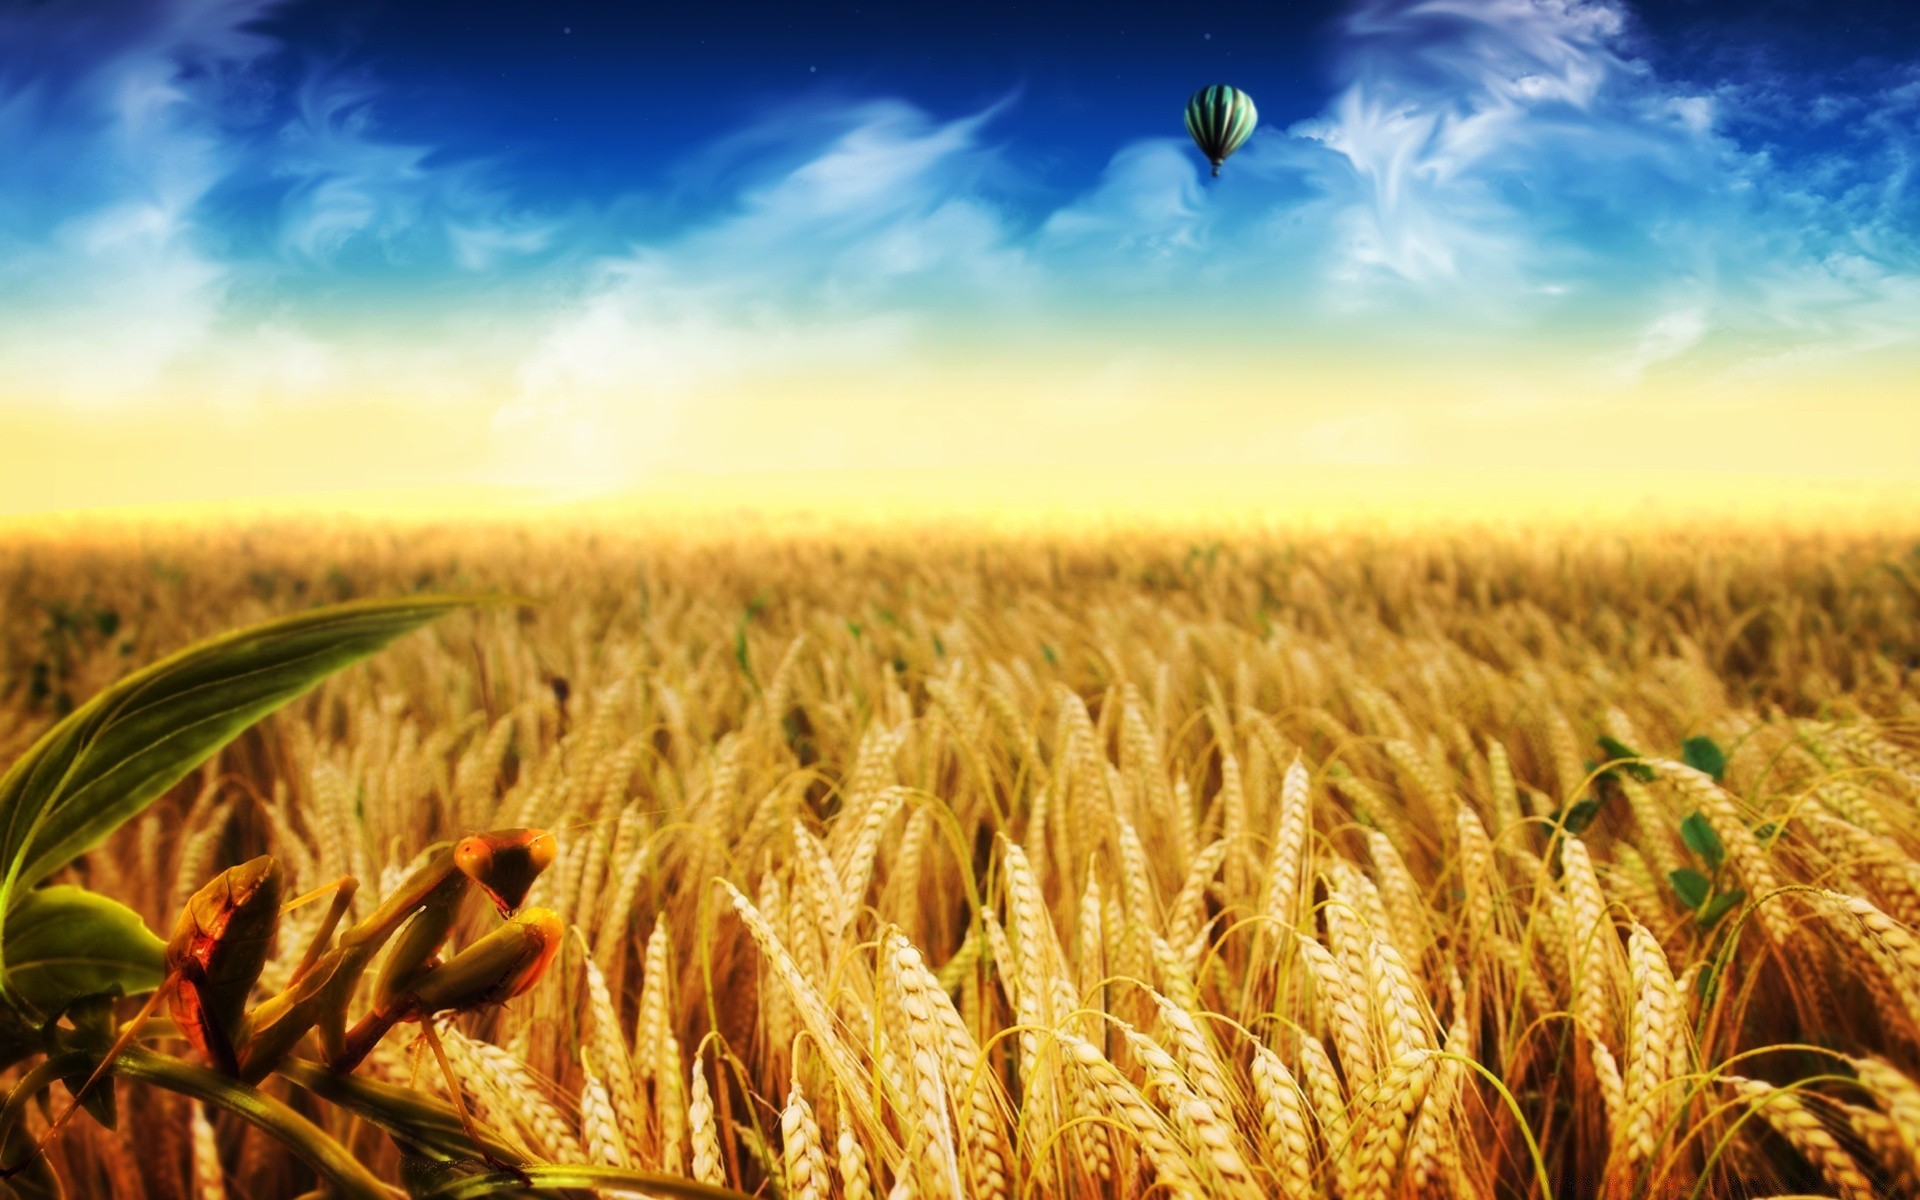 креатив хлопья пшеницы урожай ферма кукуруза хлеб сельское хозяйство пастбище поле сельских золото рост соломы рожь семян сельской местности возделываемые земли расти ячмень